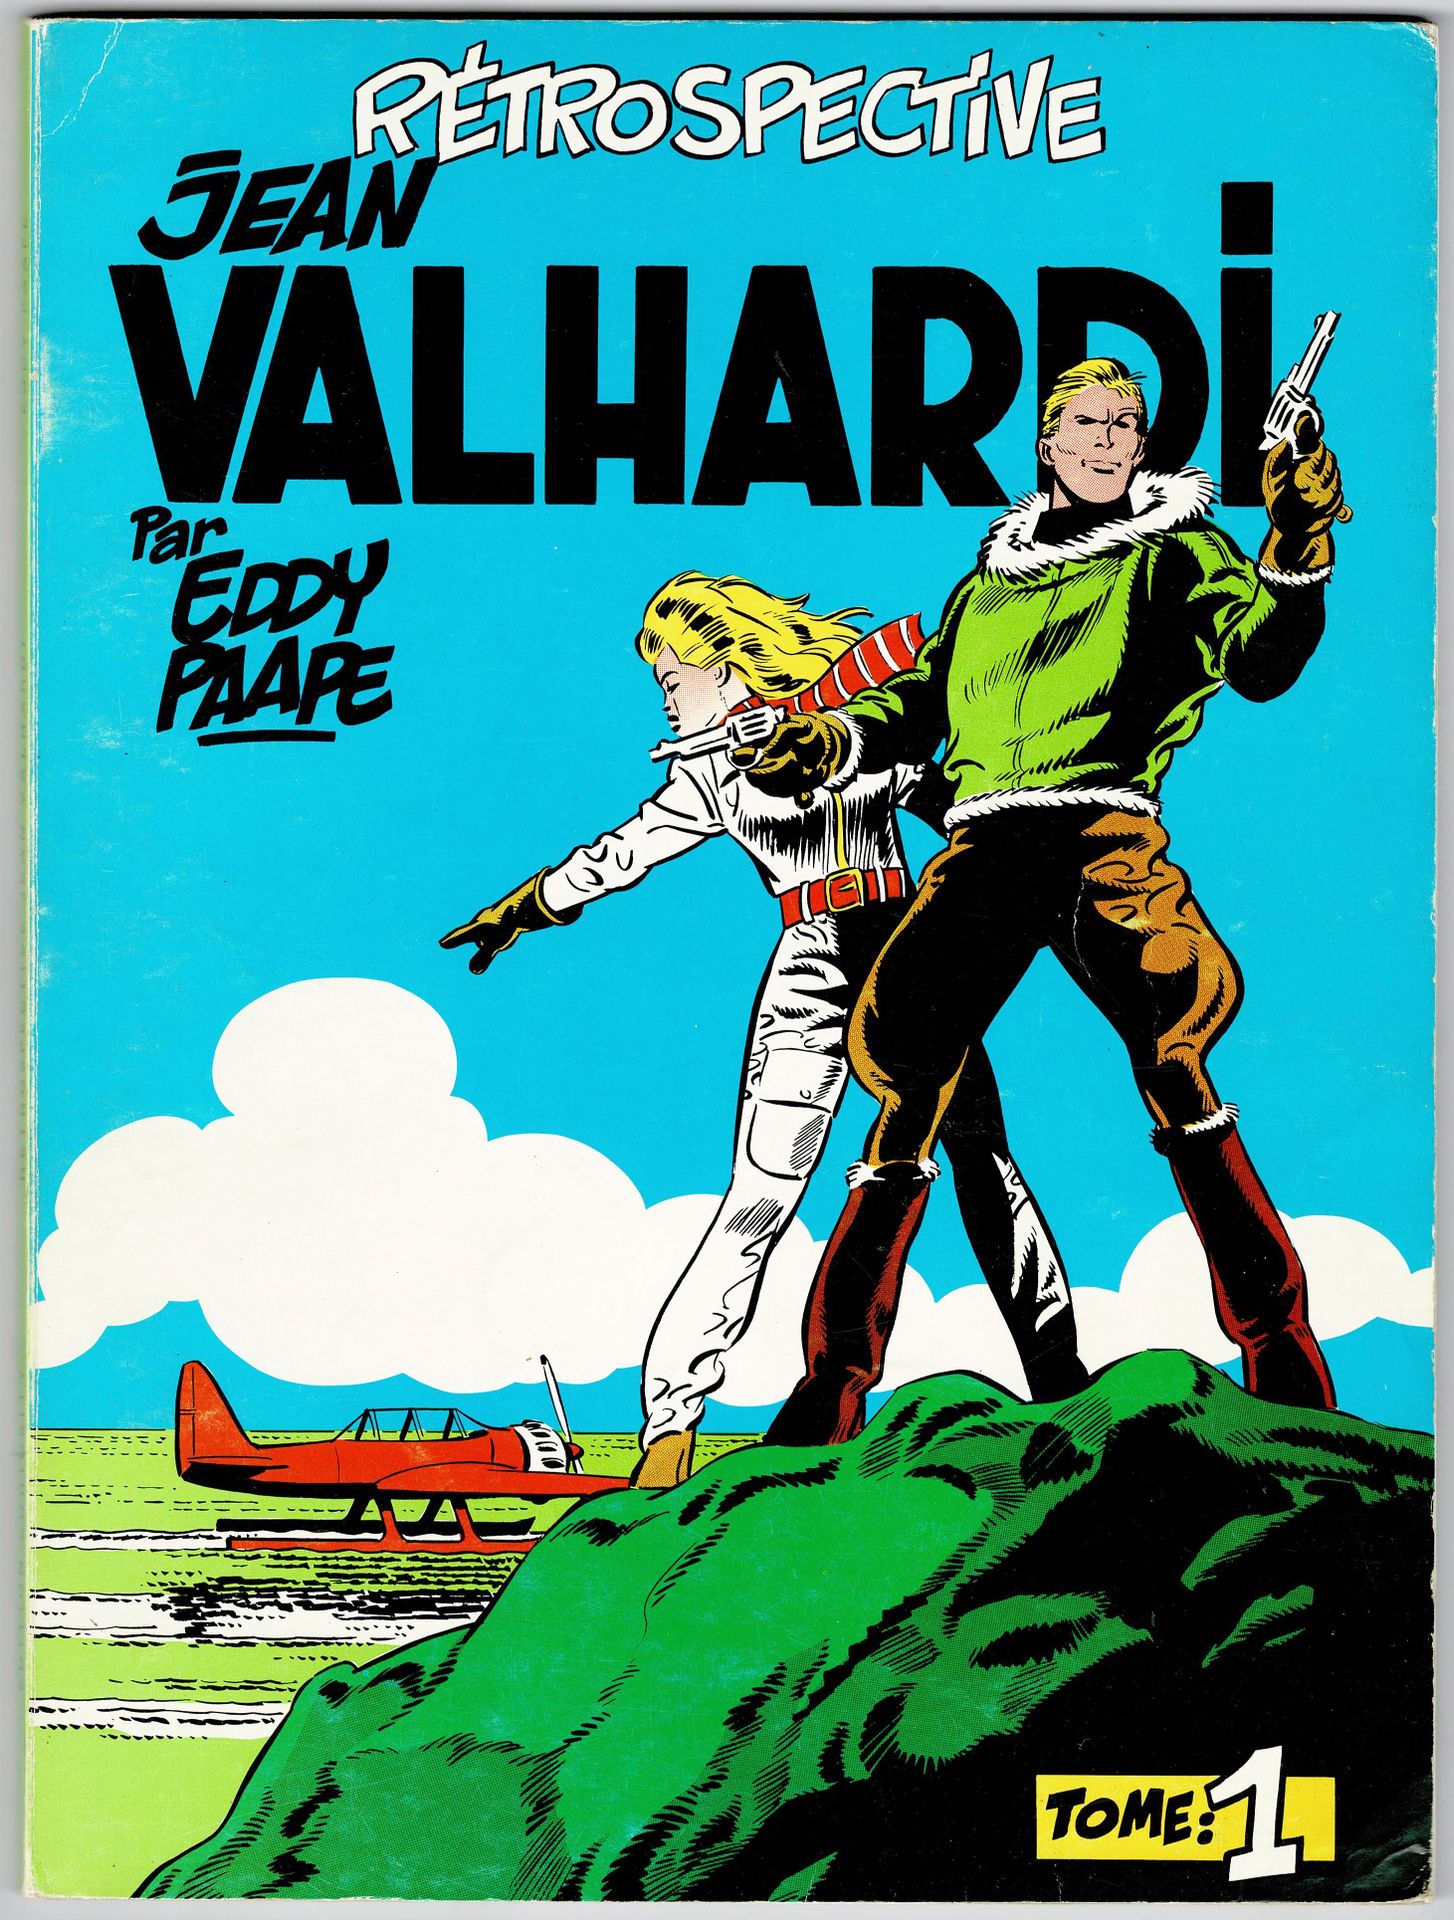 Valhardi 
Retrospective Jean Valhardi Tomes 1 and 2 published by Deligne. Very g&hellip;